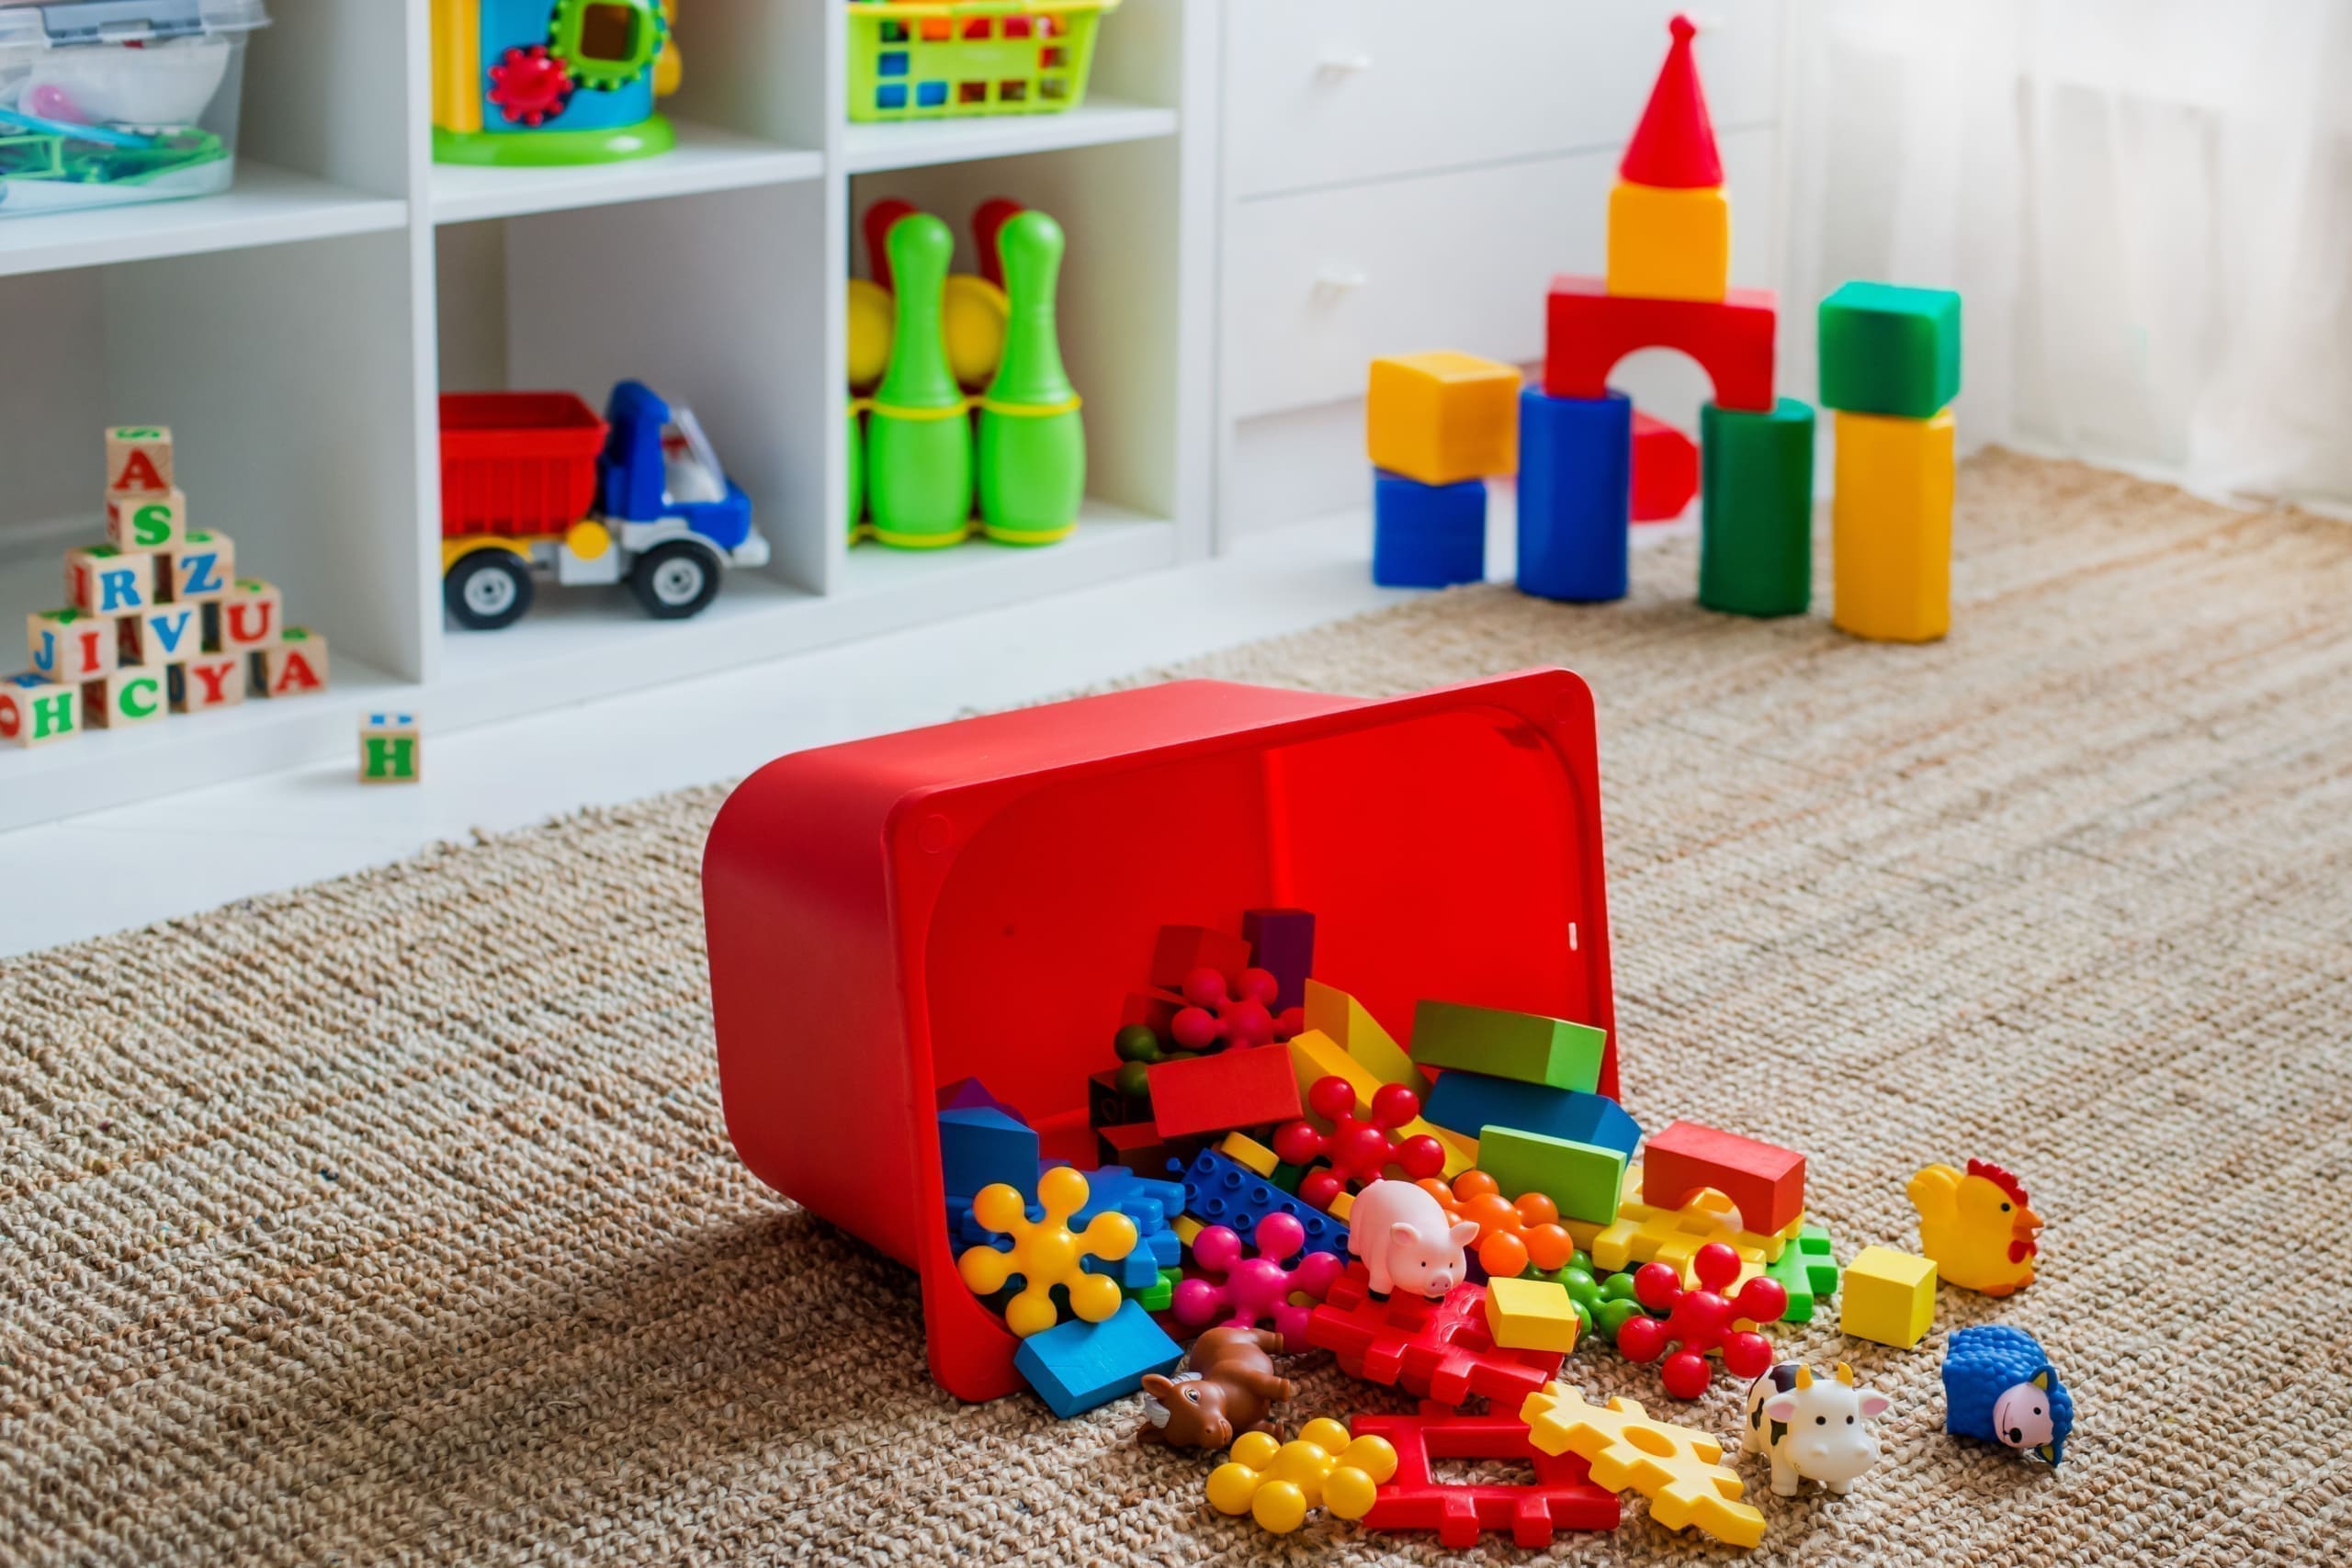 Algunos bloques de colores se derraman de un contenedor rojo en el piso de la sala de juegos de un niño.